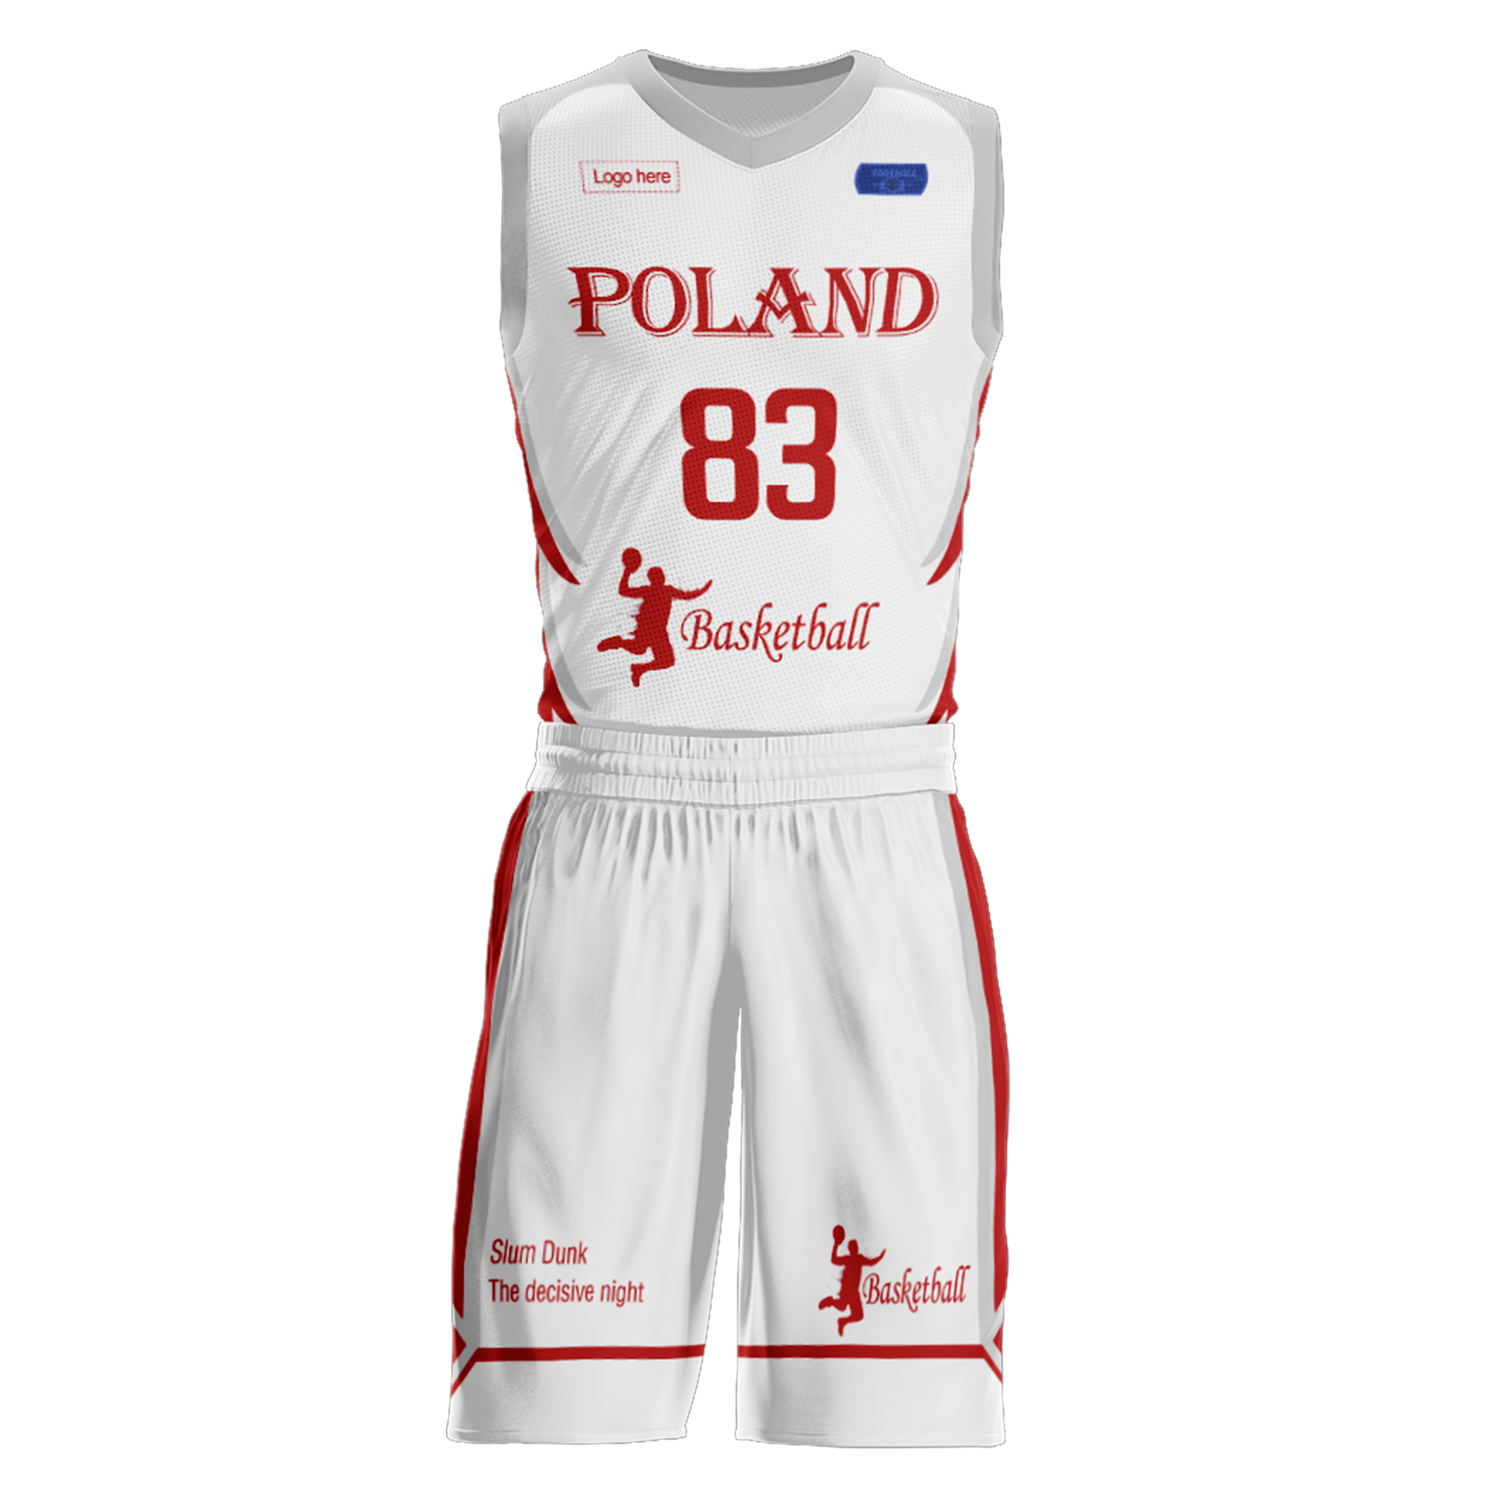 Kundenspezifische Polen-Team-Basketballanzüge